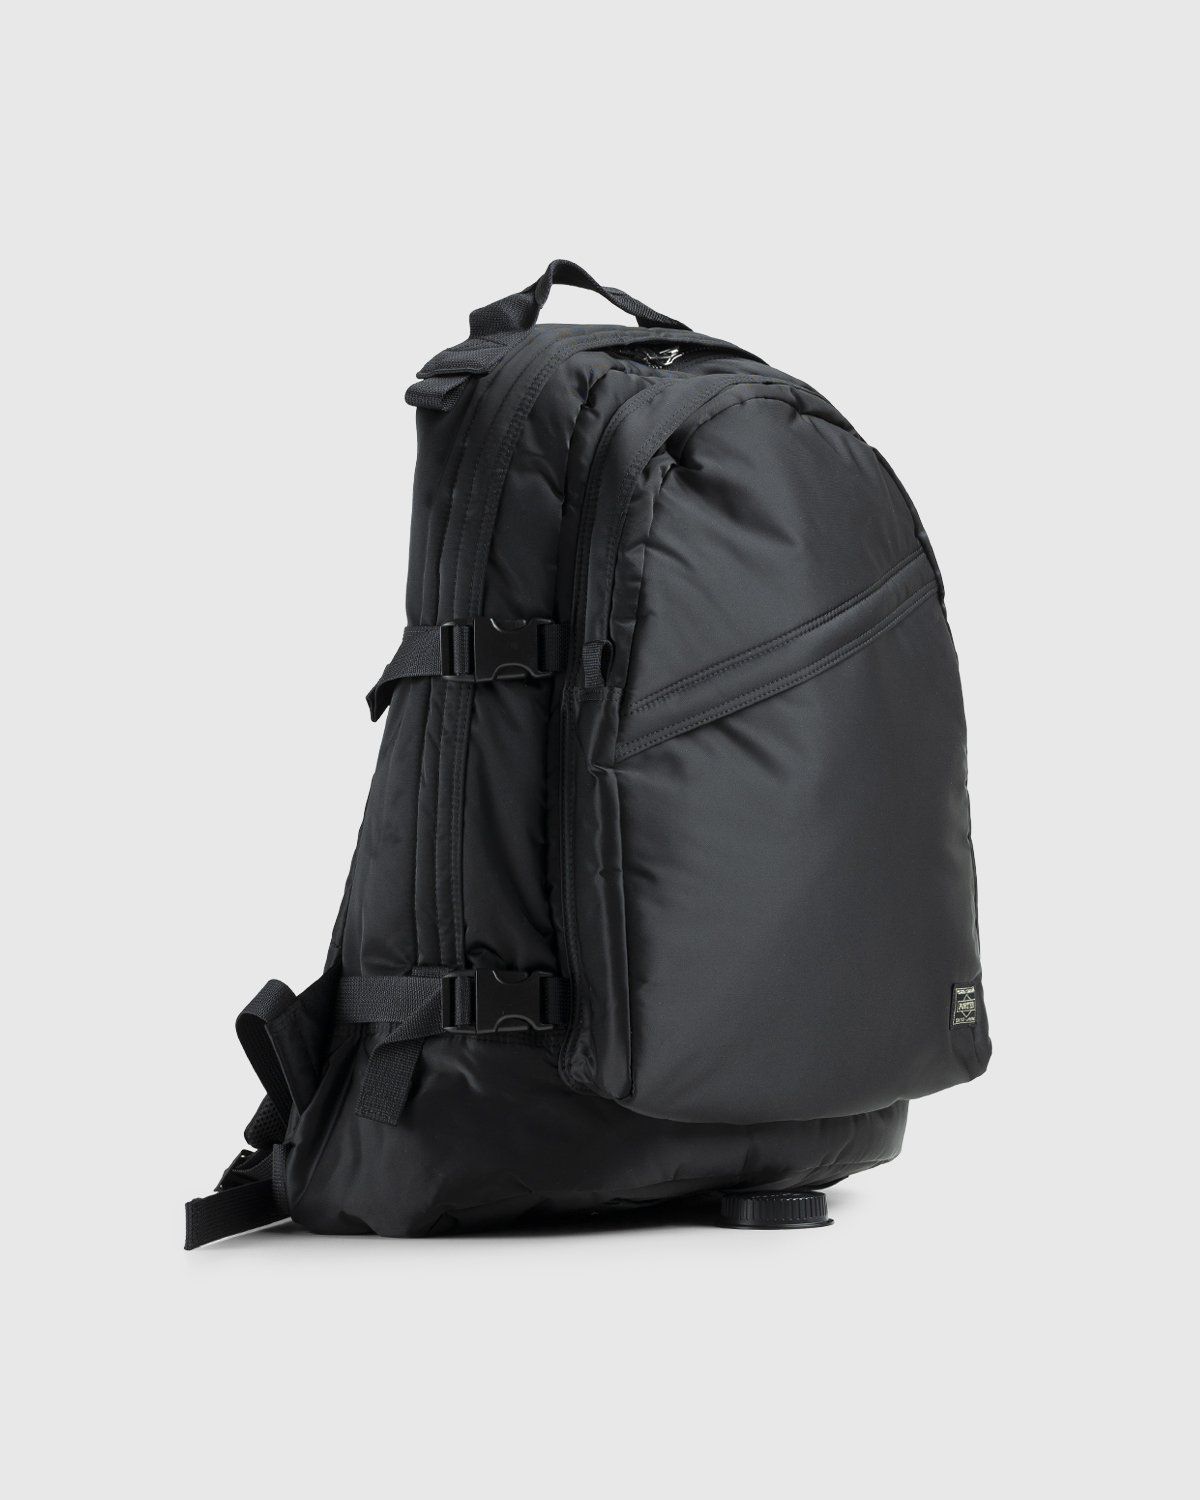 Porter-Yoshida & Co. – Tanker Padded Day Pack Black - Backpacks - Black - Image 3